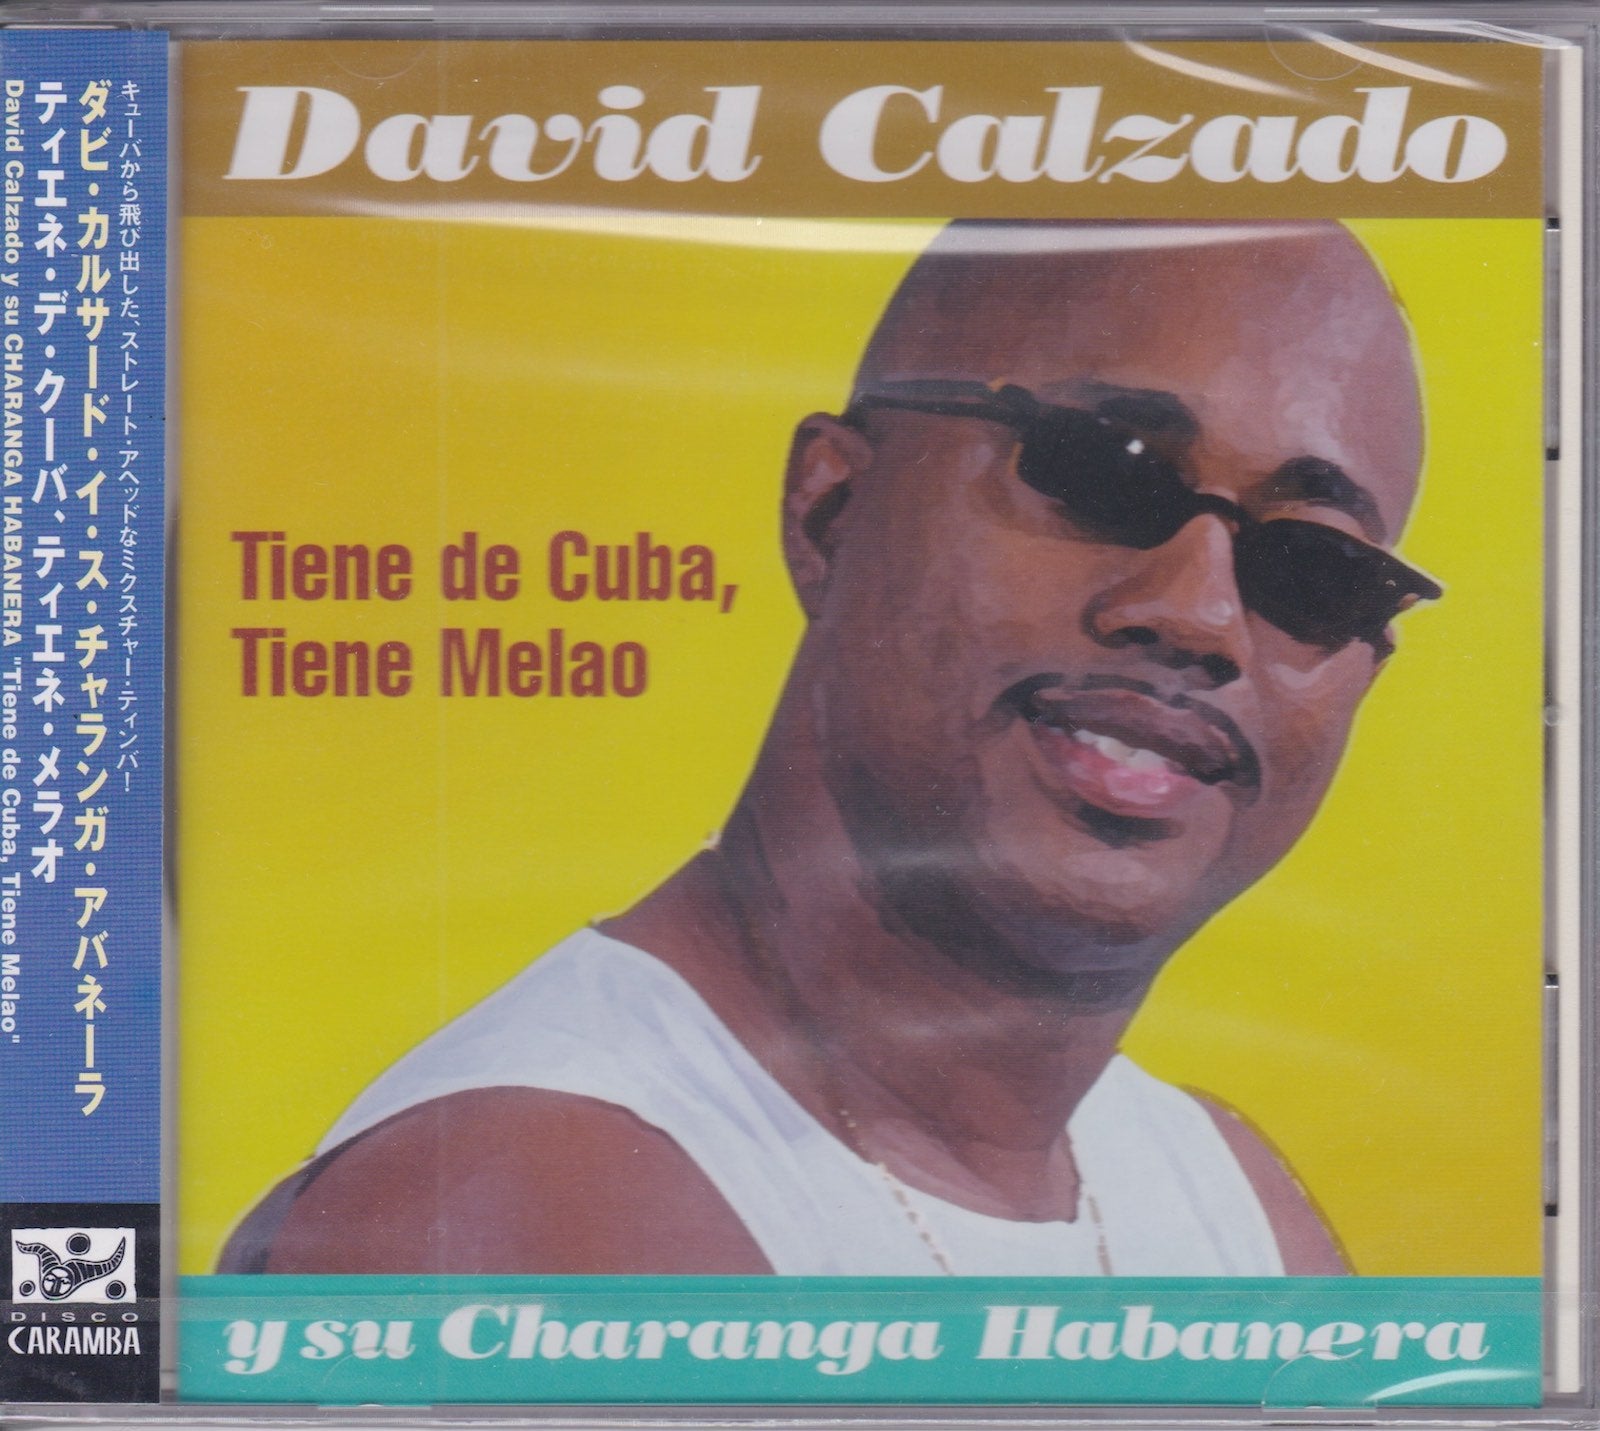 David Calzado y Su Charanga Habanera - Tiene De Cuba, Tiene Melao